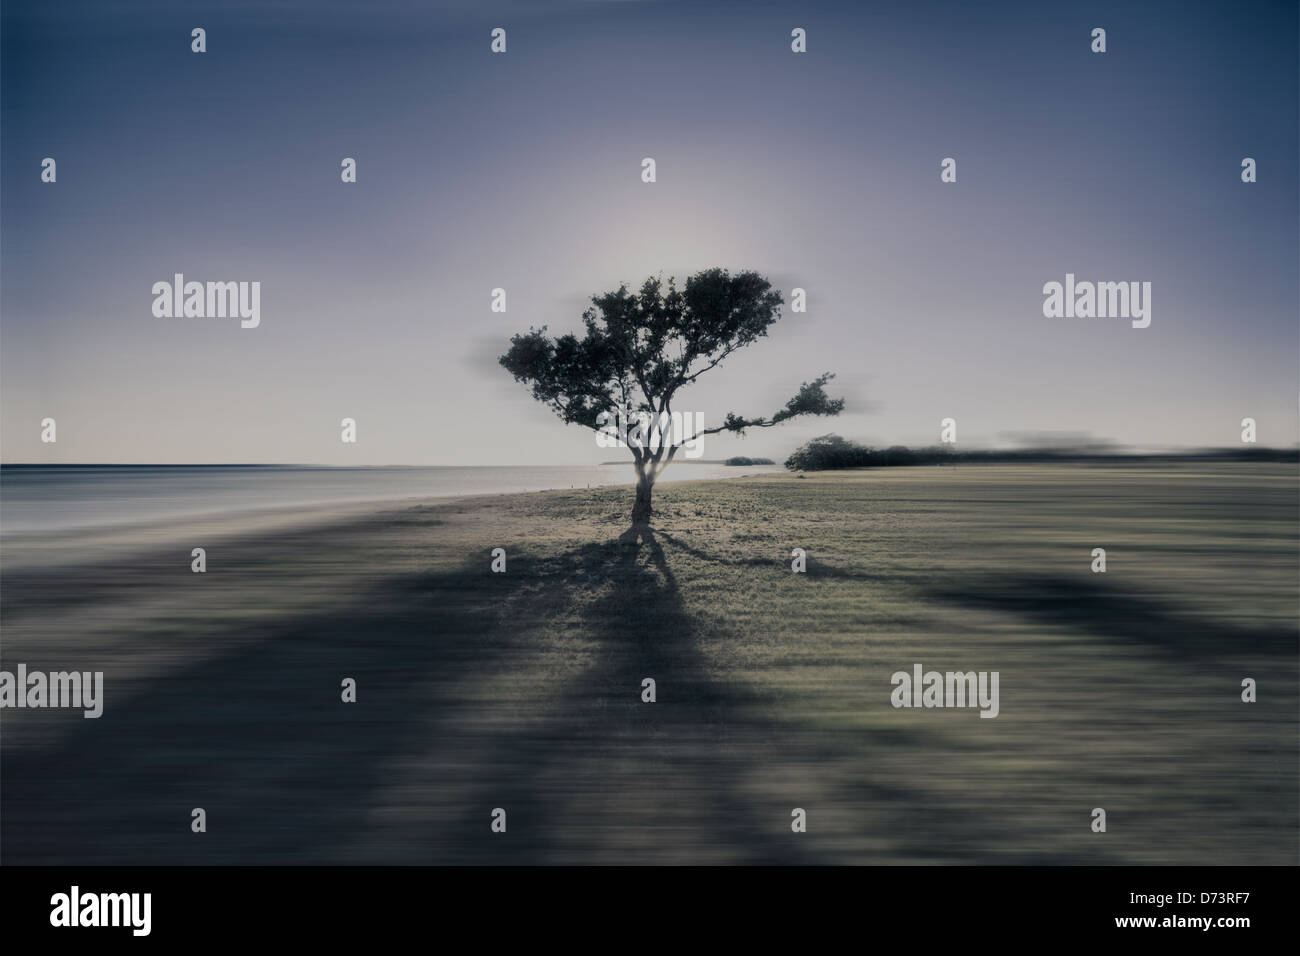 La silhouette d'un arbre avec son ombre à l'océan Banque D'Images